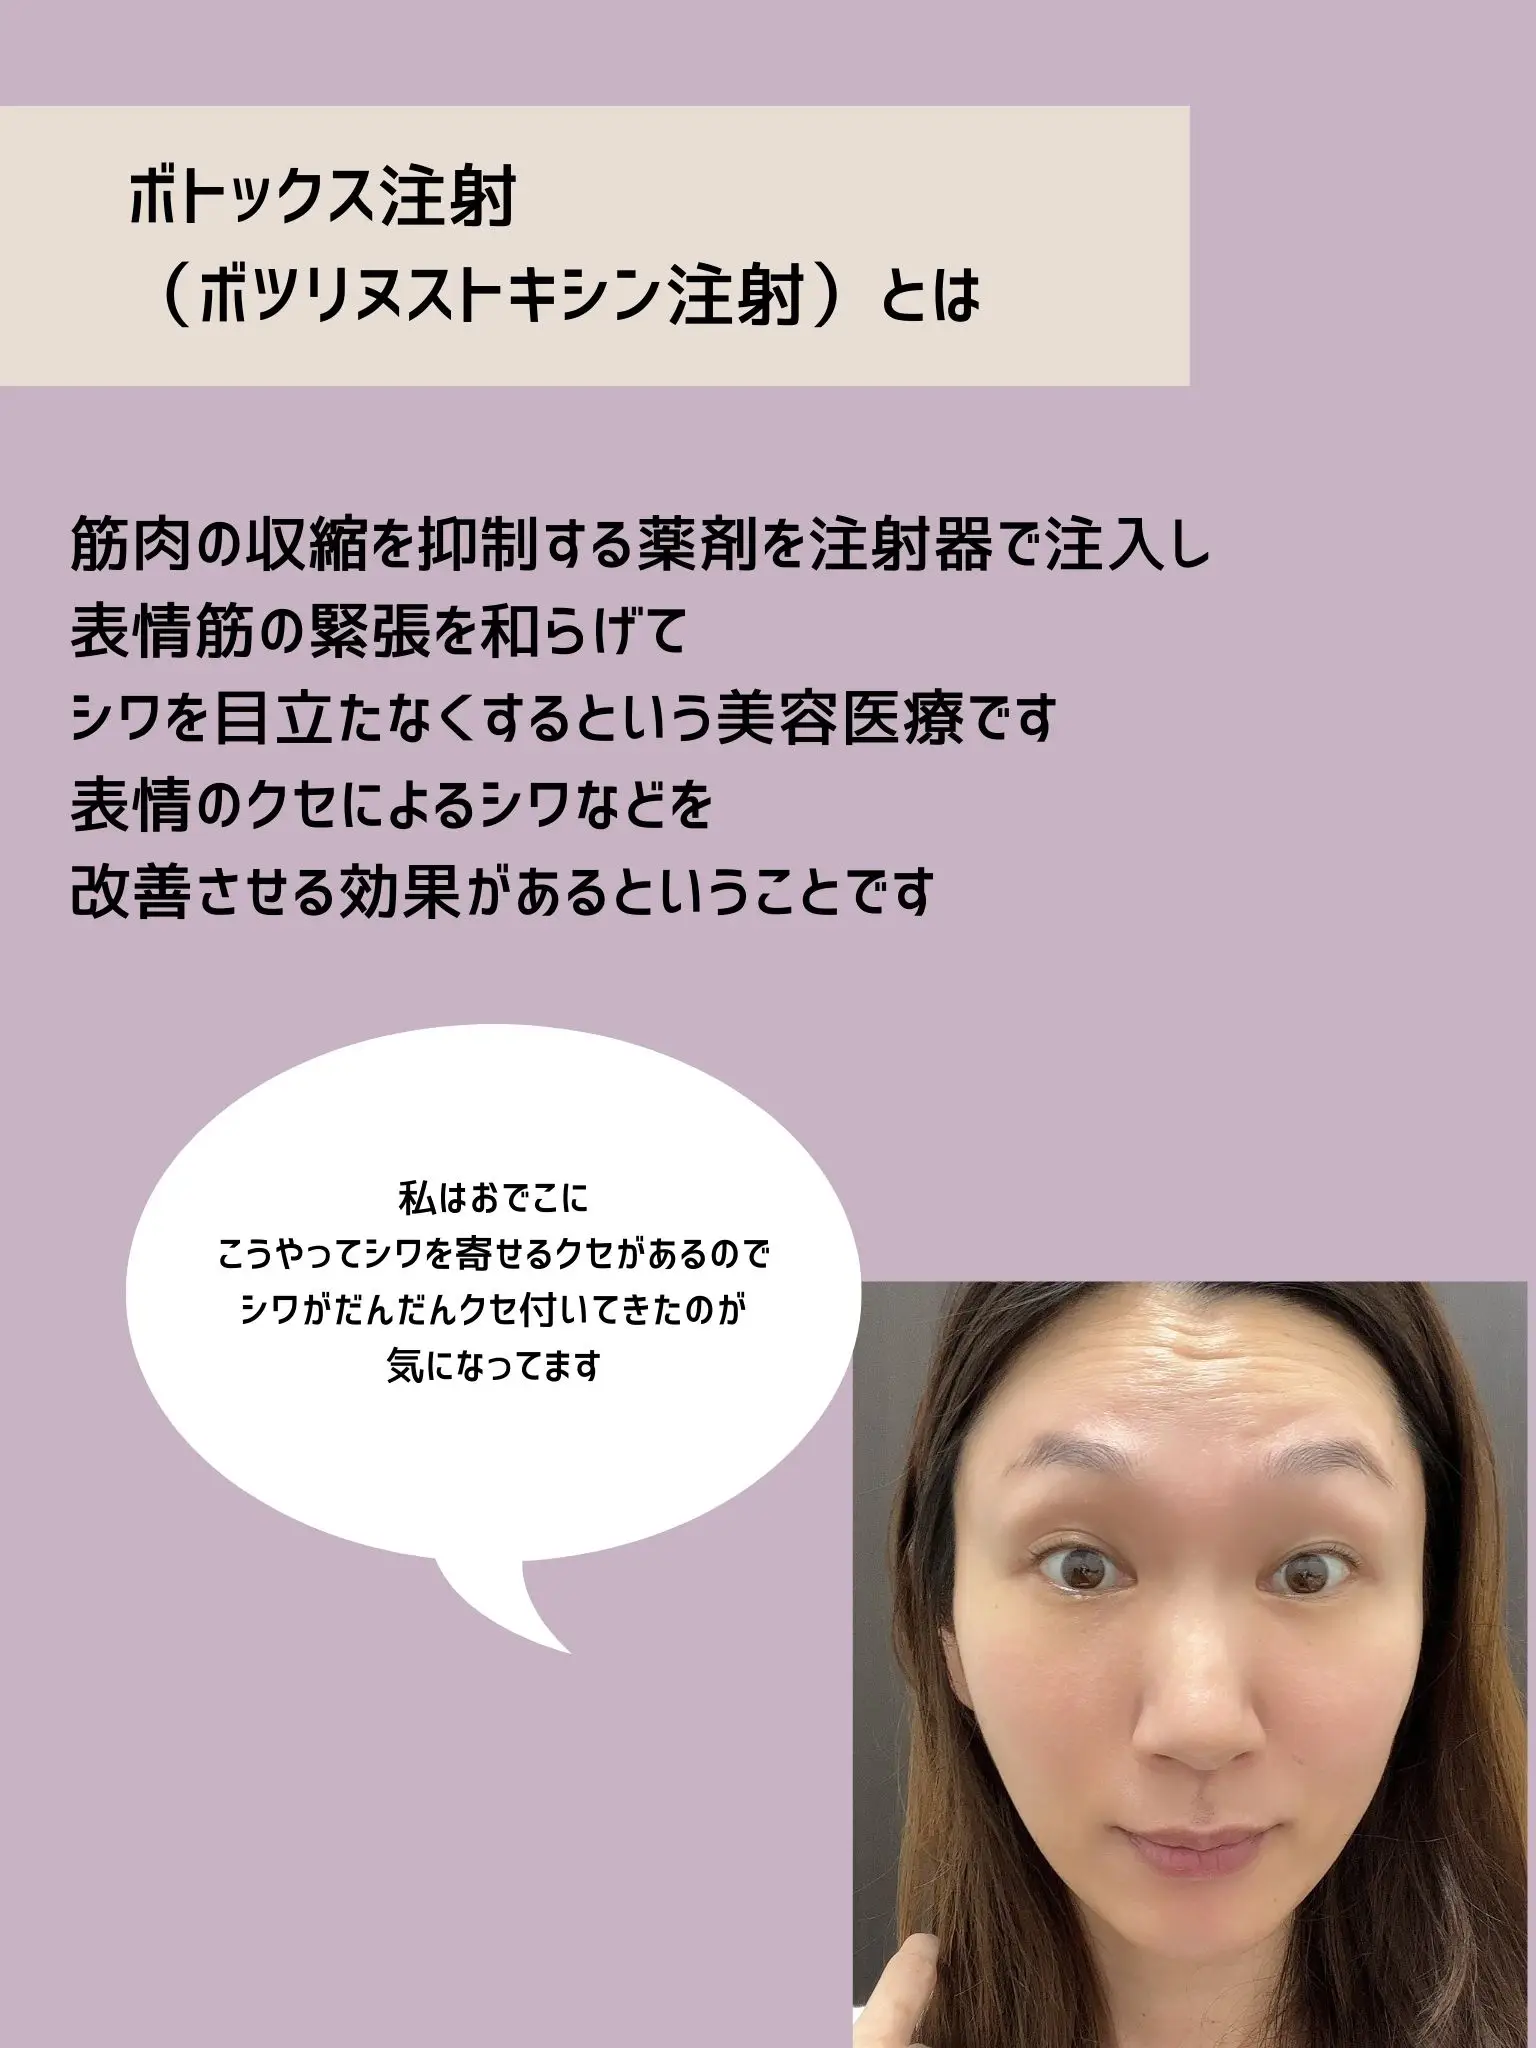 新橋武ボツリヌストキシンによる美容治療 実践講座 (PEPARS(ペパーズ